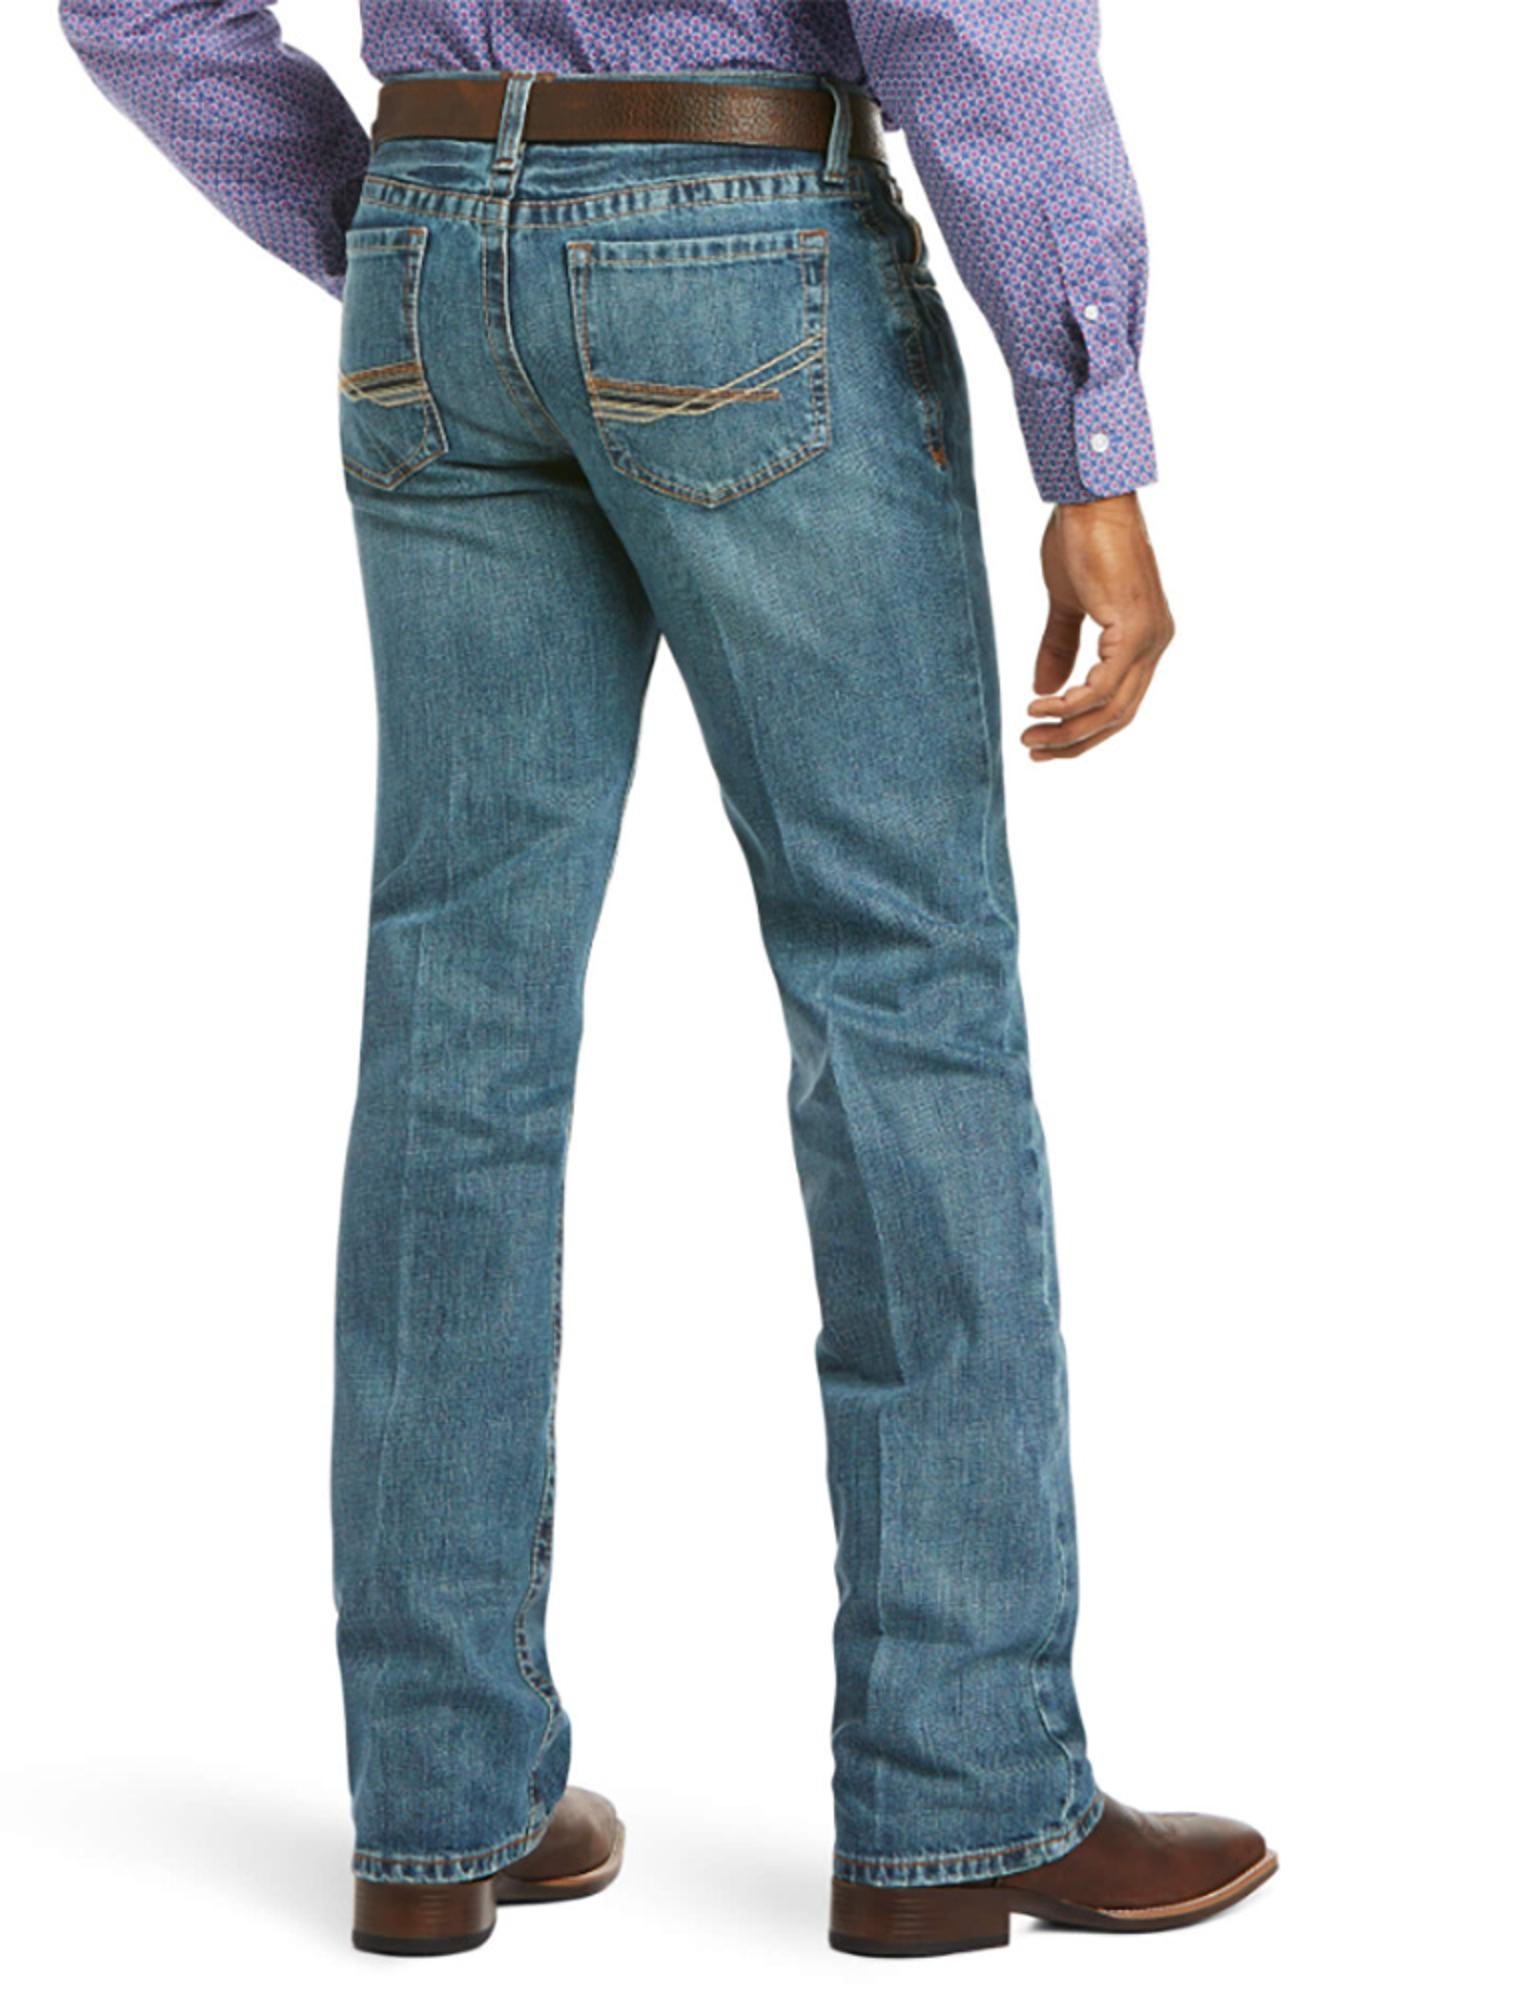 Carhartt Relaxed Fit B460 LVB Blue Denim Jeans Tag Size W36 L30